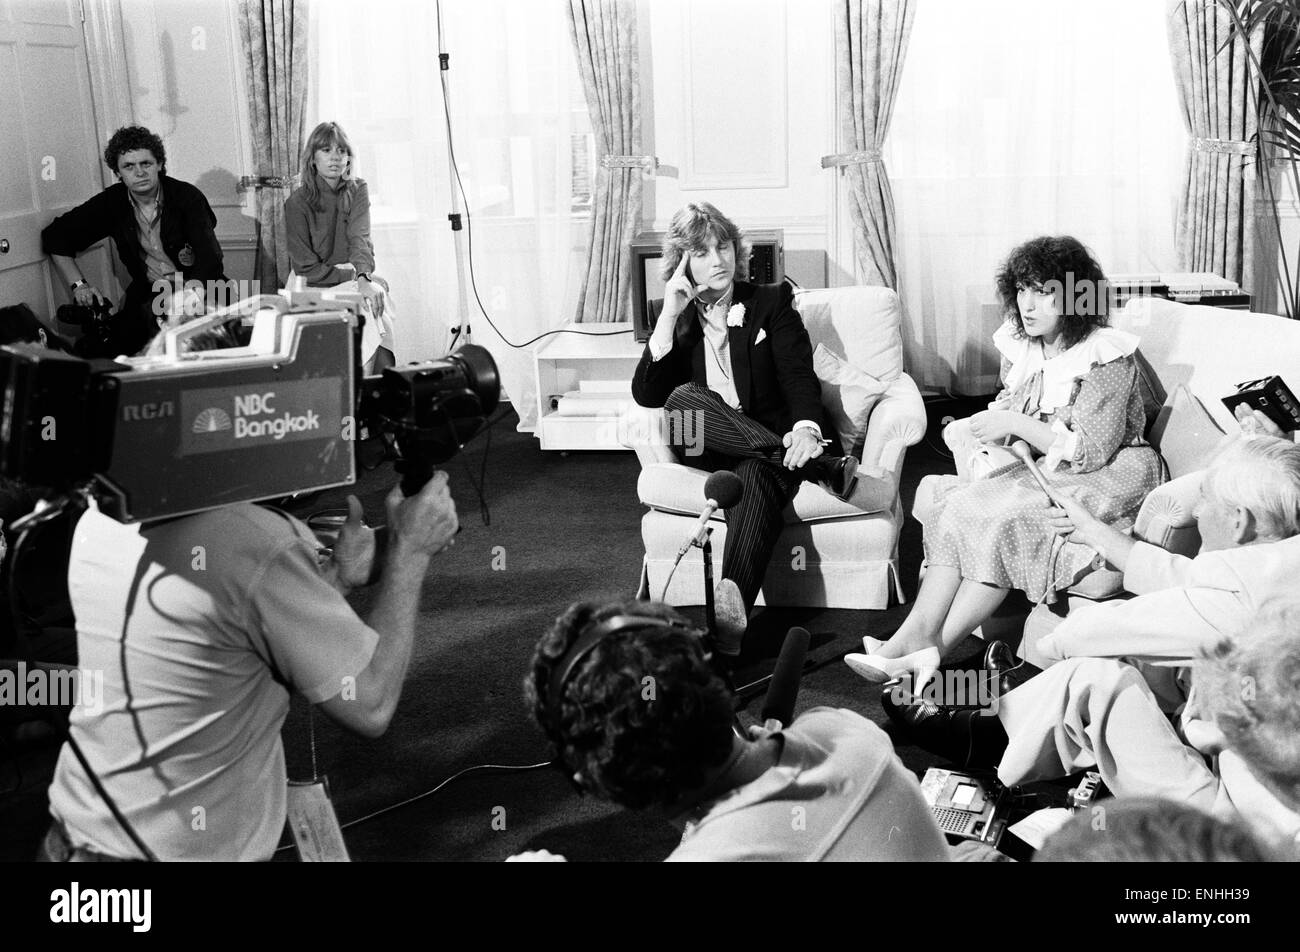 Hochzeit von Prinz Charles & Lady Diana Spencer, 29. Juli 1981. Im Bild: Brautkleid-Designer David & Elizabeth Emanuel werden von der internationalen Presse interviewt. Stockfoto